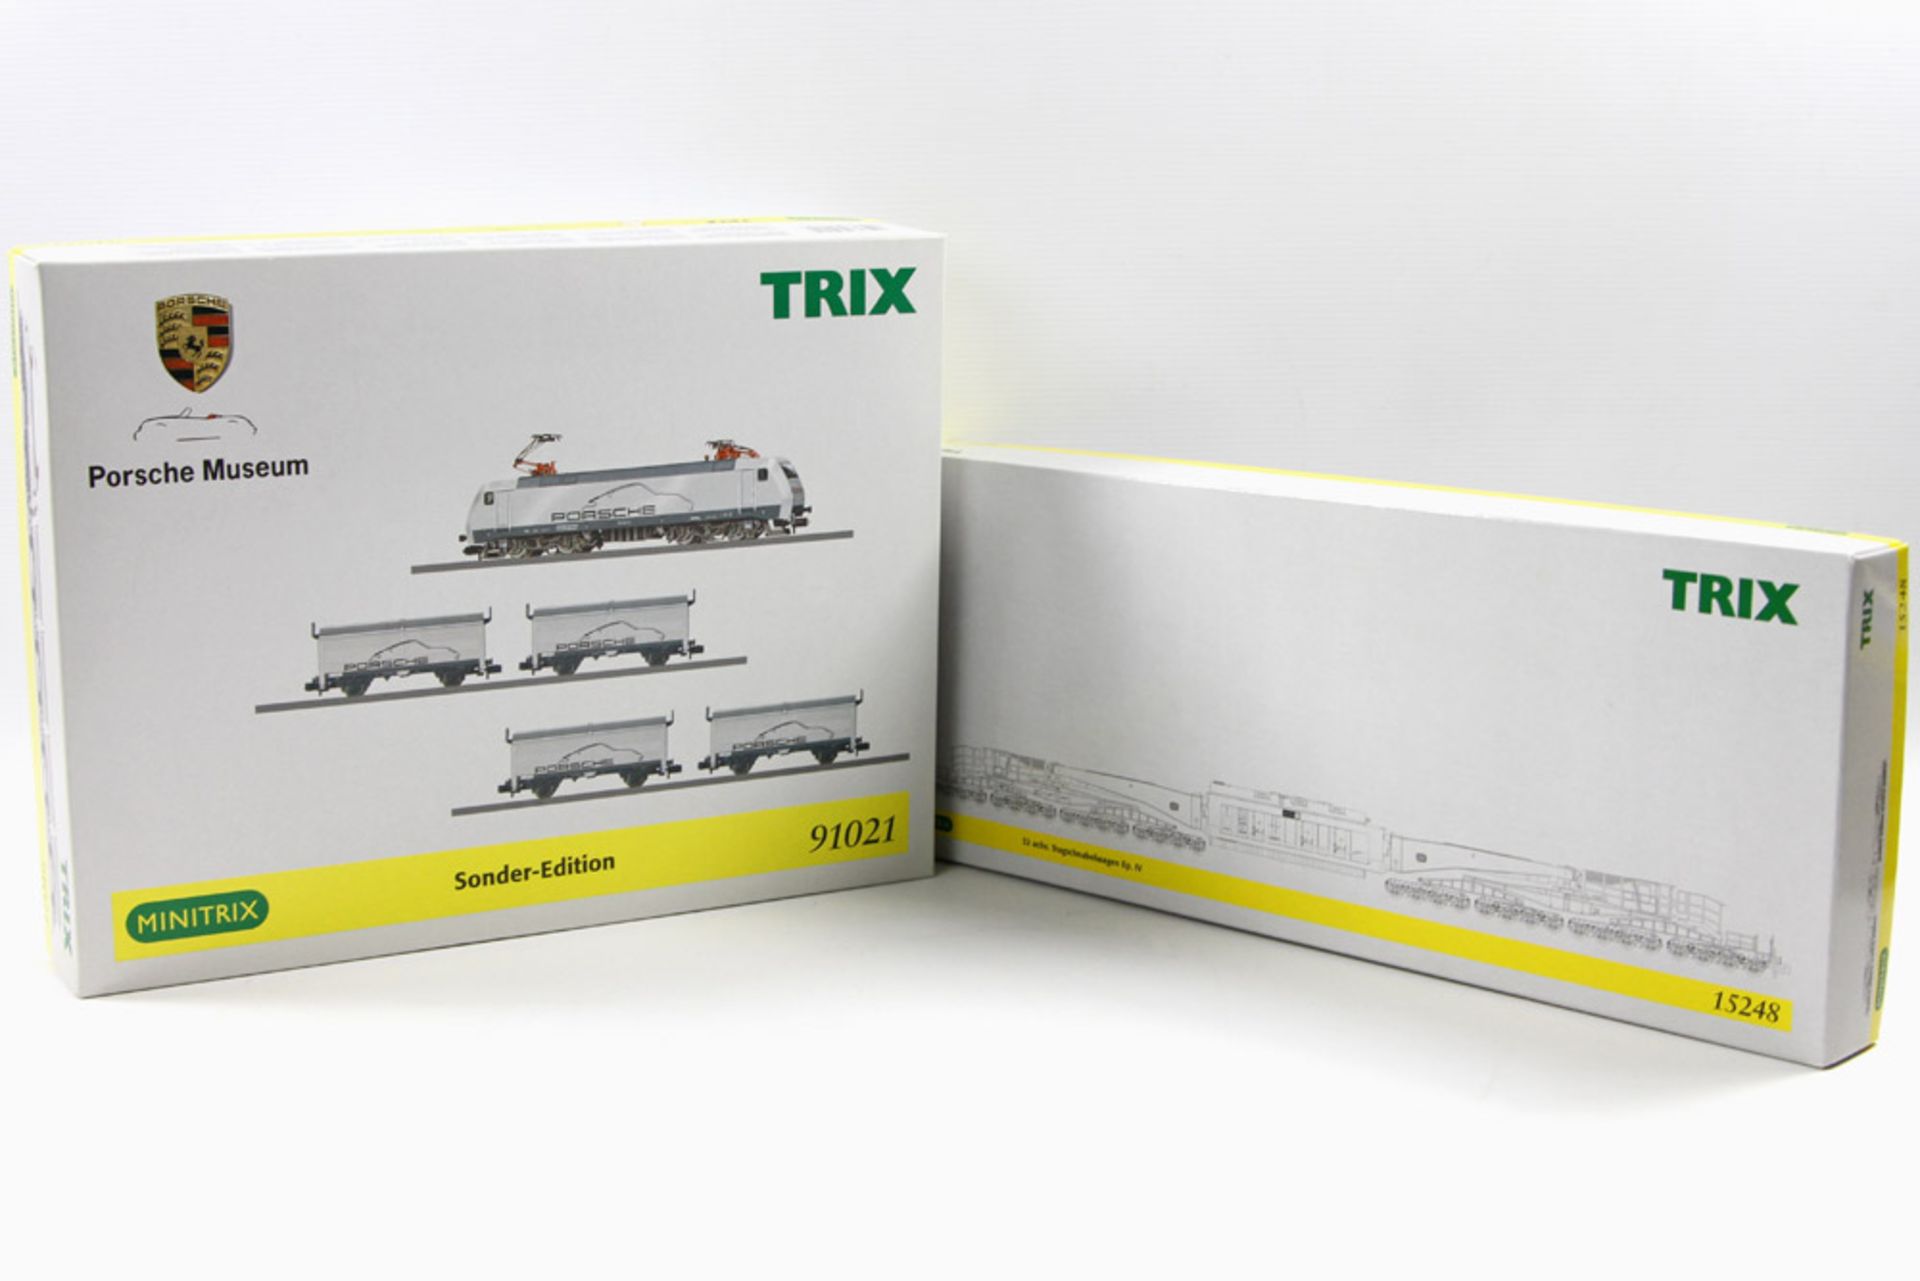 MINITRIX zwei Zugpackungen 12548 und 91021, Spur N, "Tragschnabelwagen" der DB, 32-achsig, mit Trafo